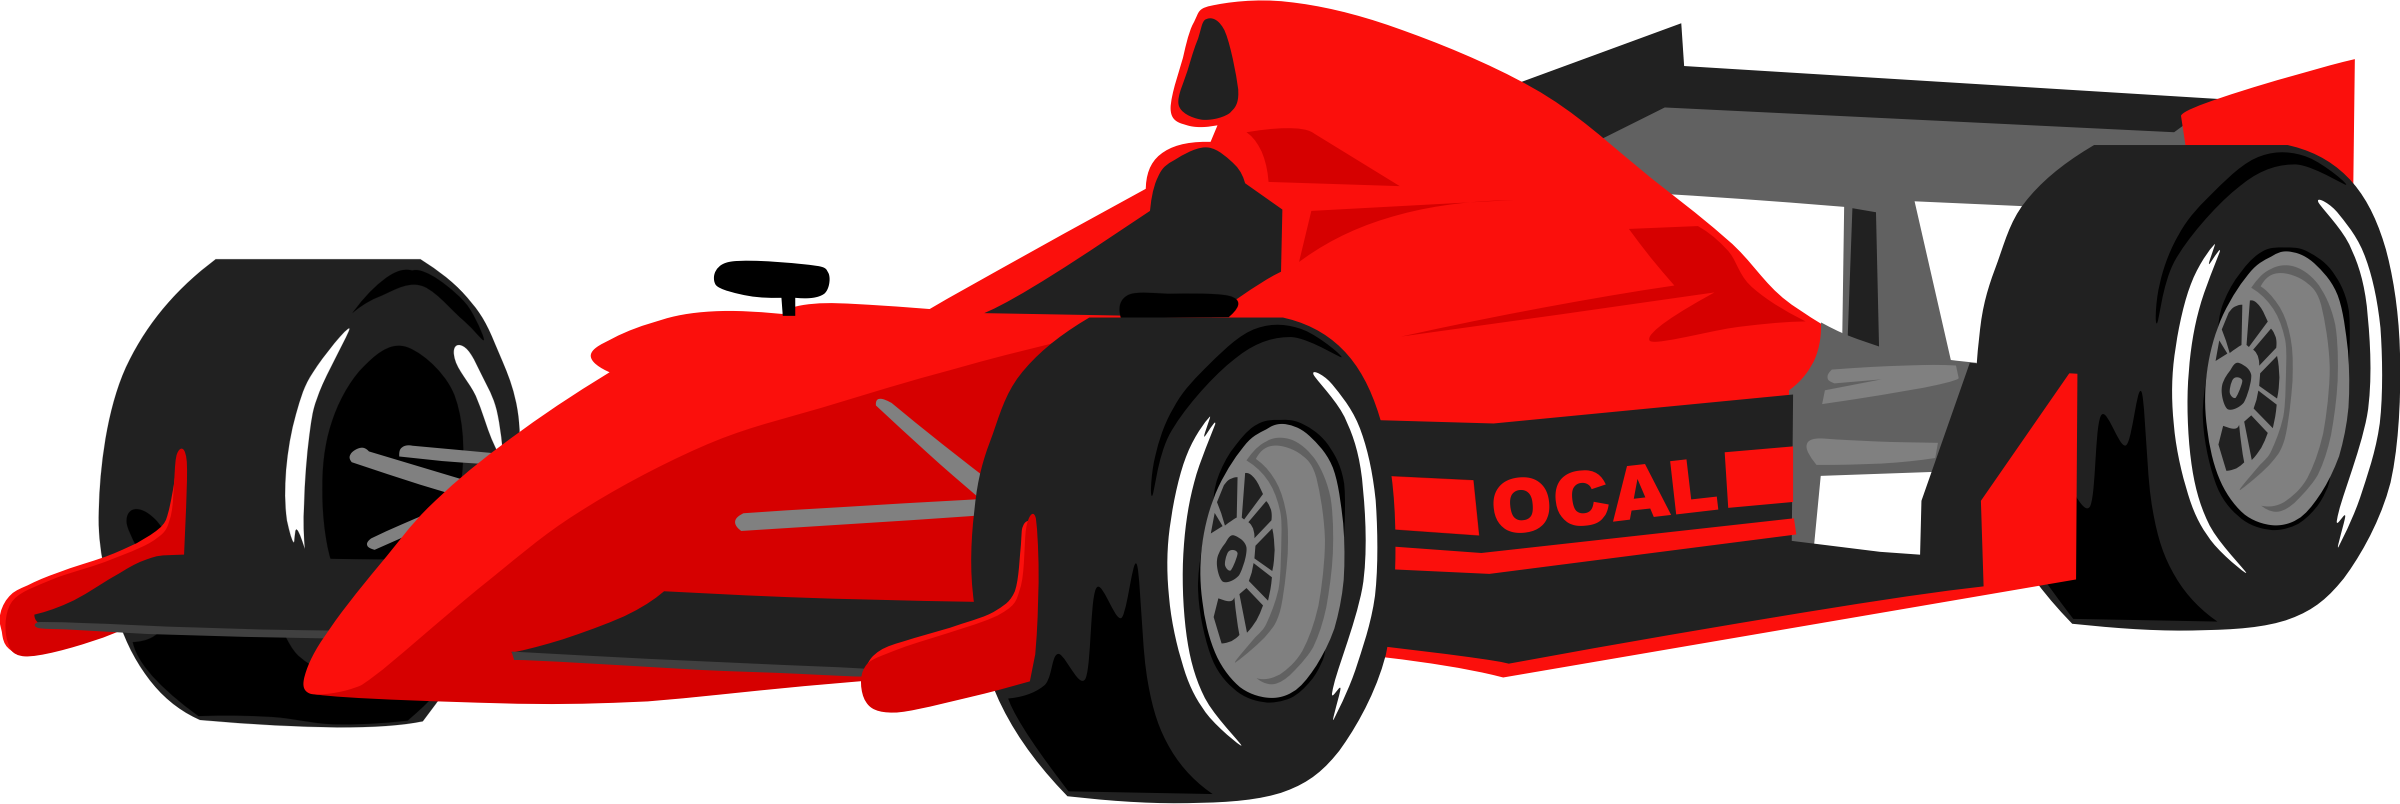 Red Formula Race Car Illustration